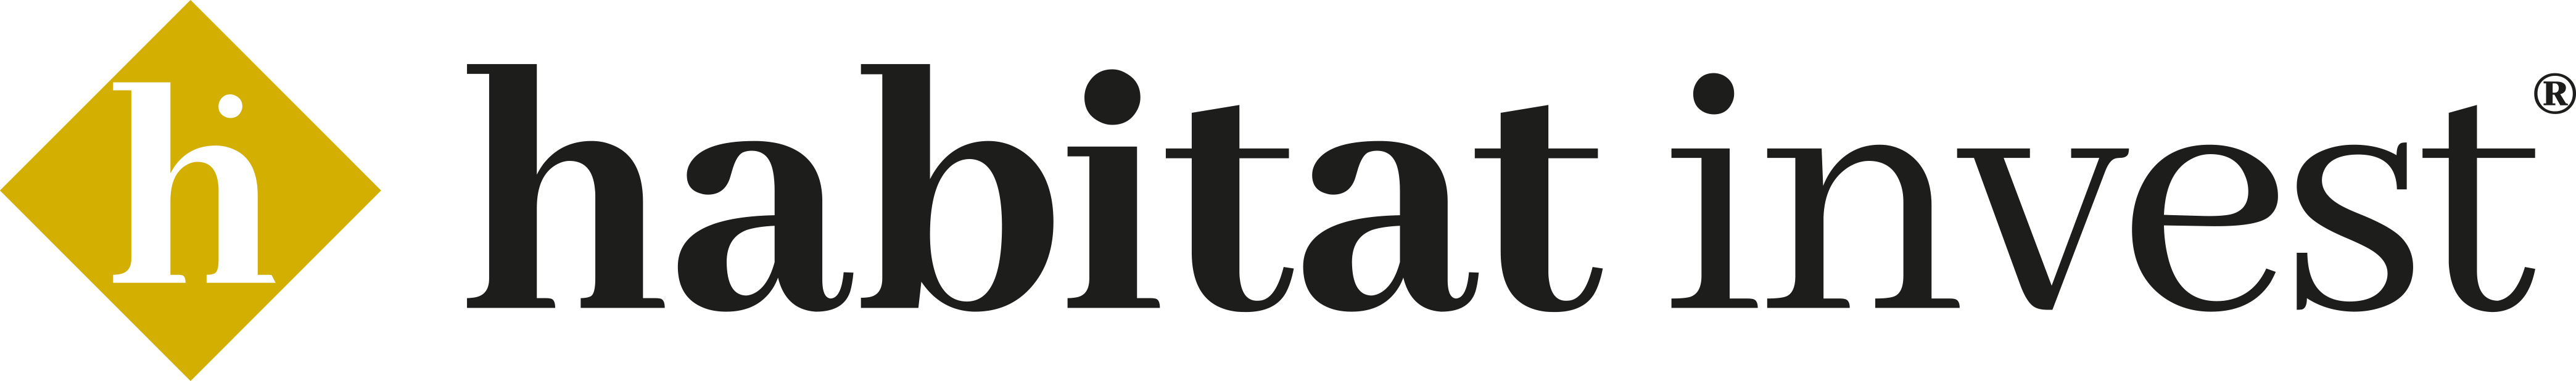 habitat invest logo